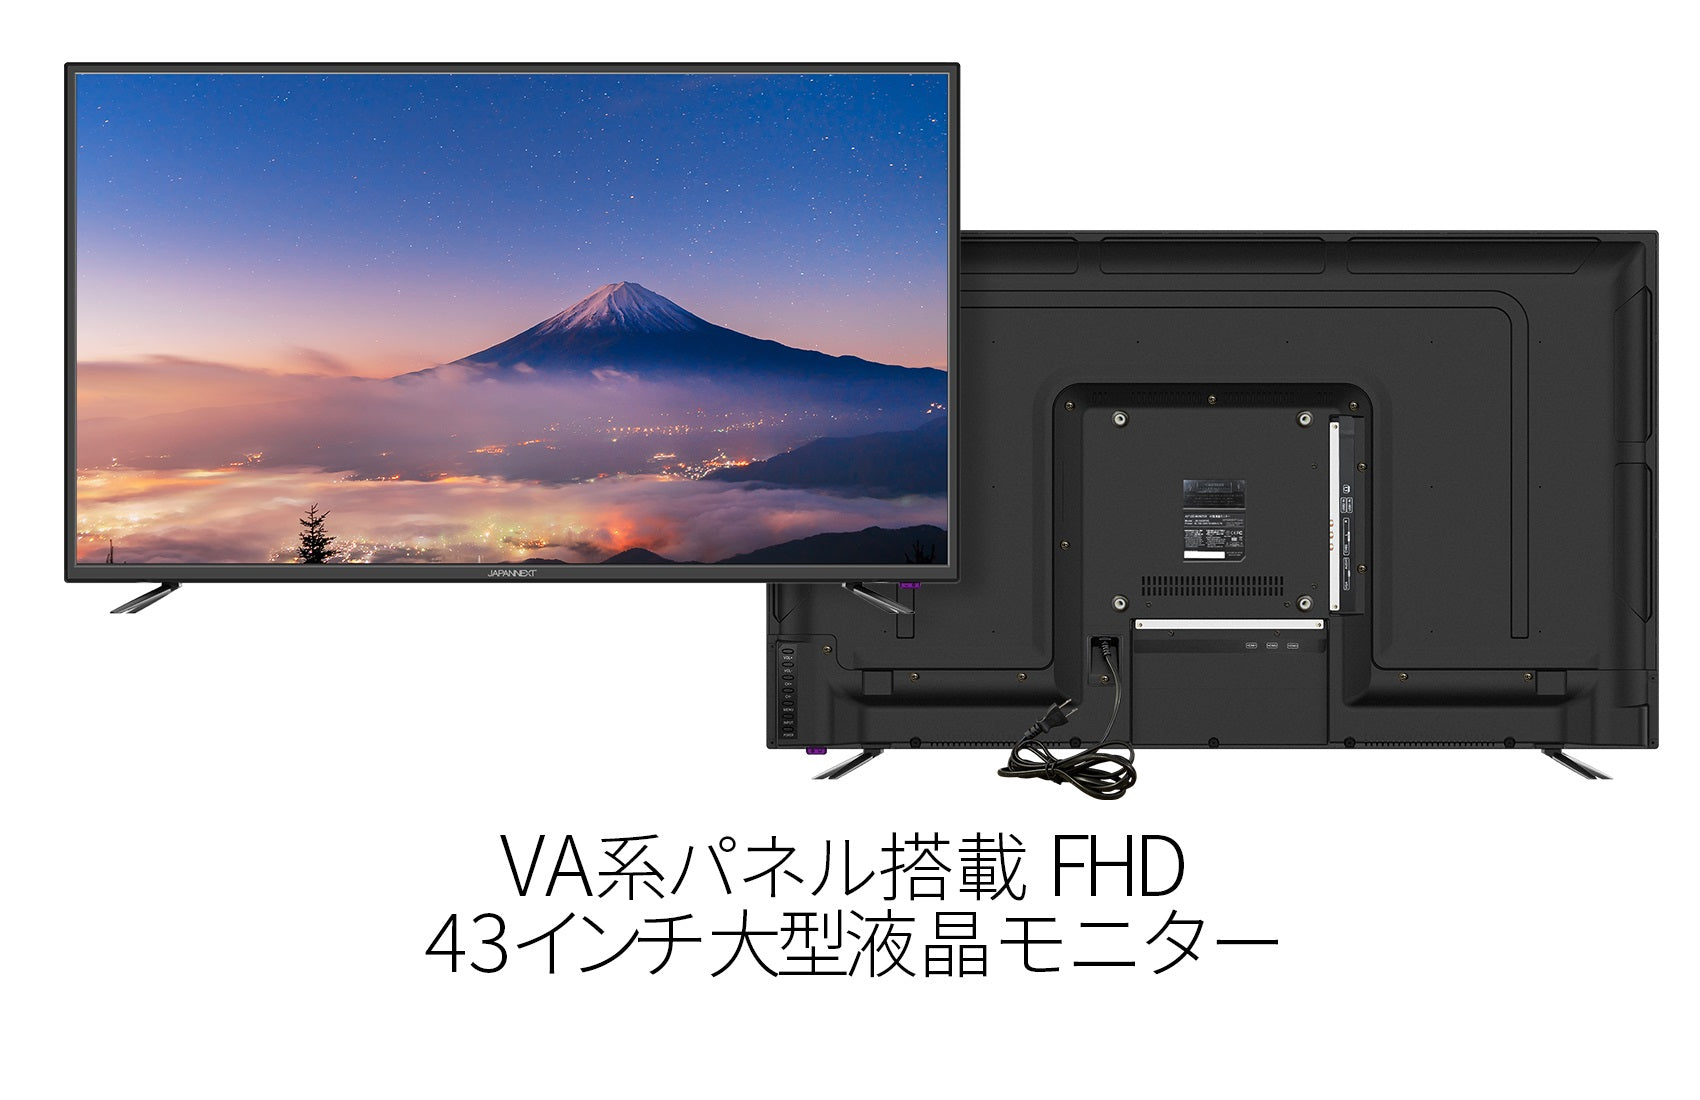 JAPANNEXT 43インチ大画面 フルHD(1920x1080) 液晶モニター JN-V430FHD